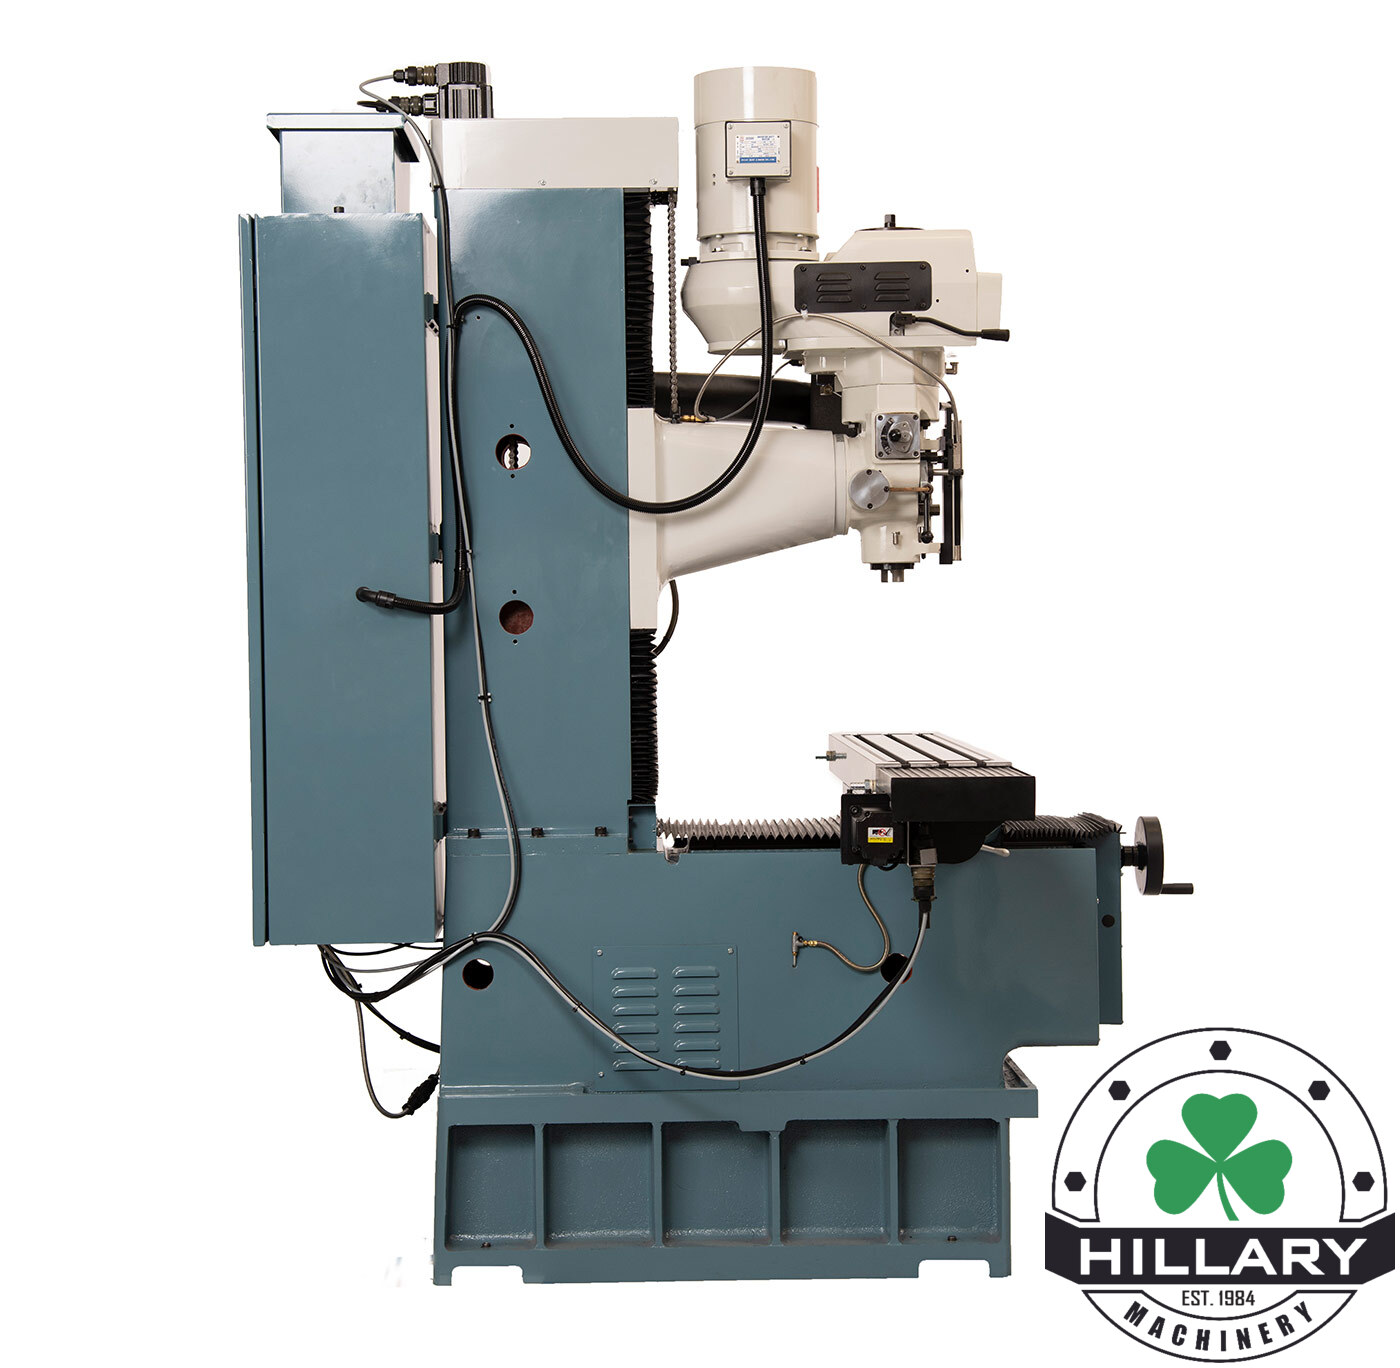 TRAK MACHINE TOOLS TRAK DPM RX2 Tool Room Mills | Hillary Machinery